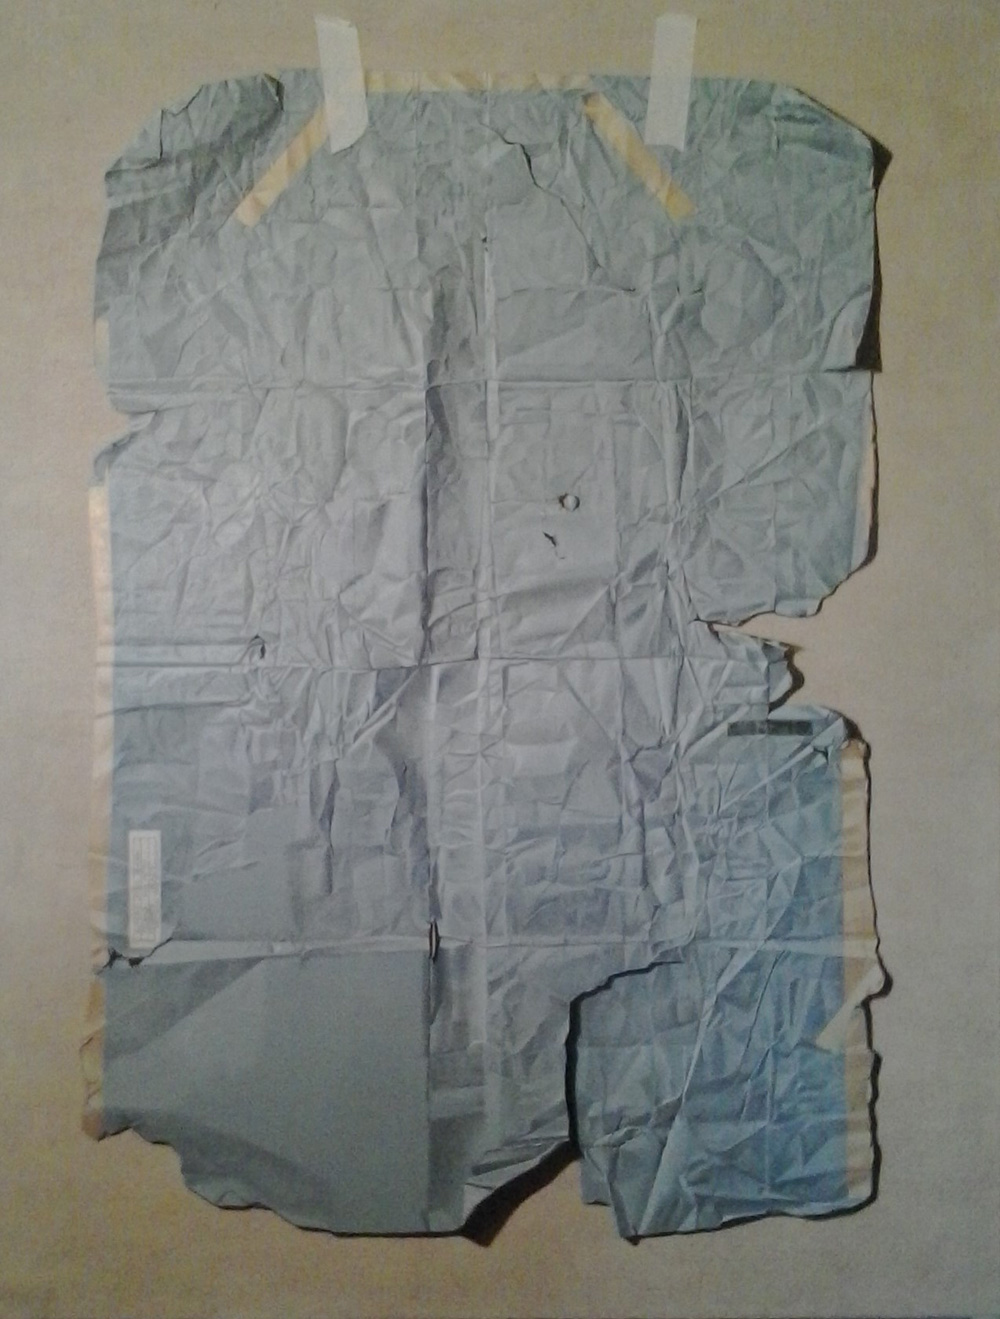 Memory Map, 2015, Olio su tela, 130 x 170 cm